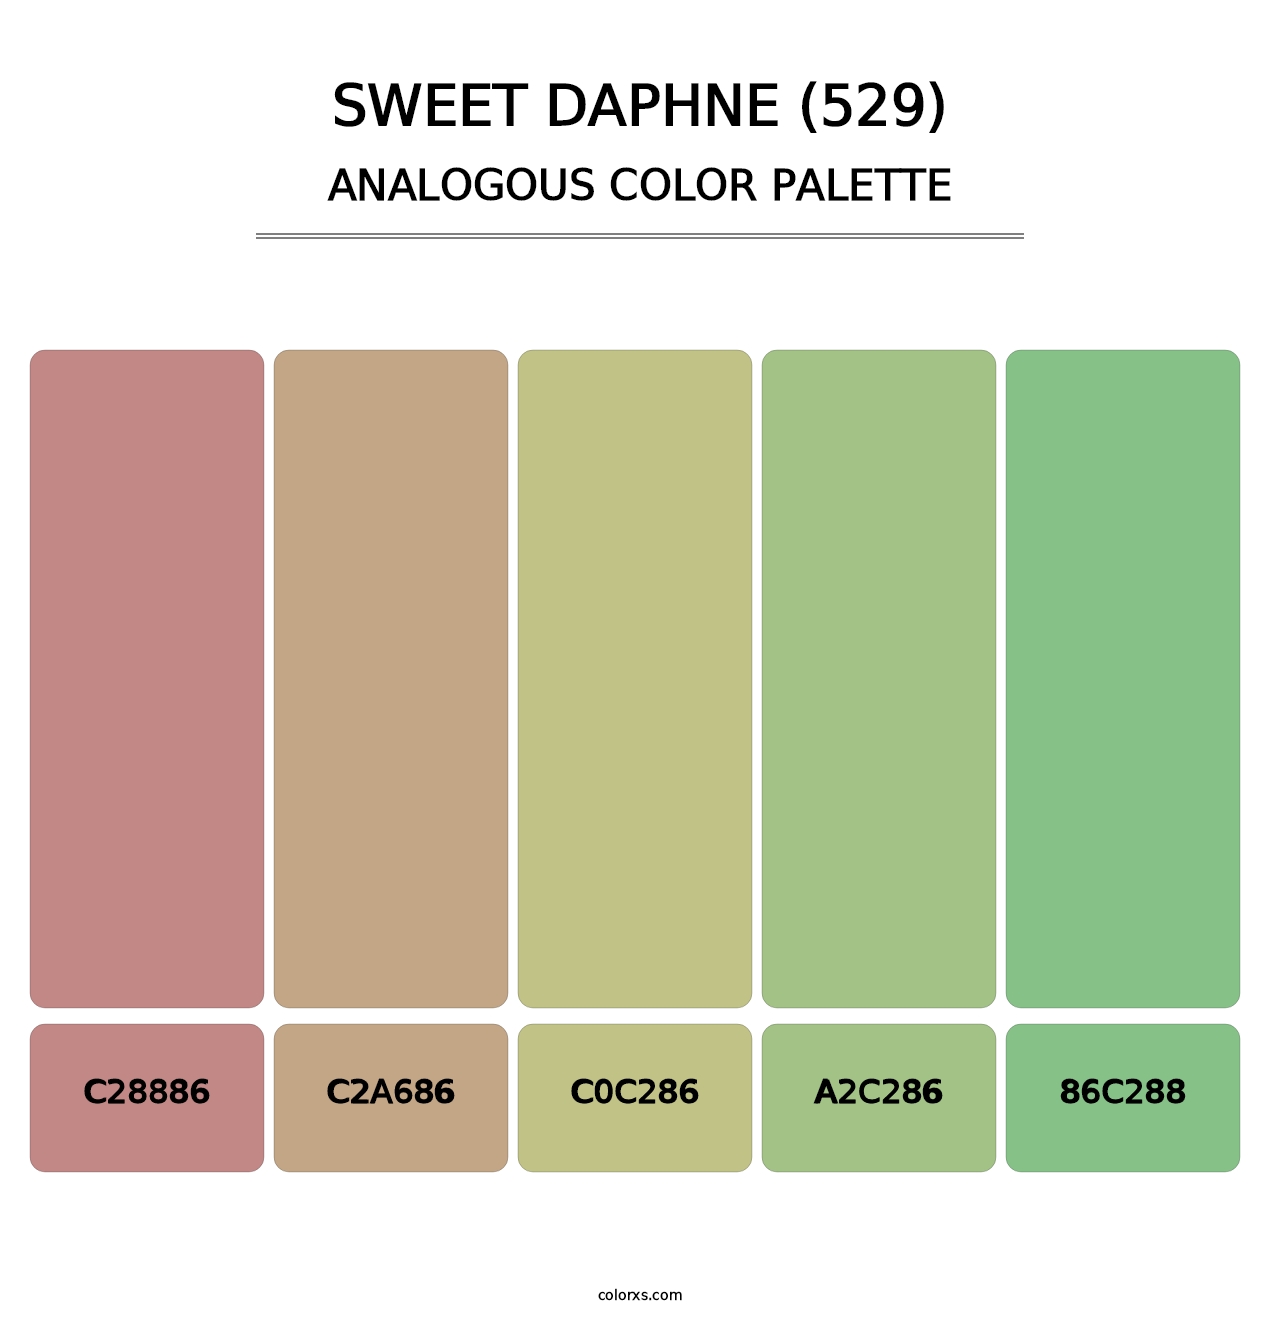 Sweet Daphne (529) - Analogous Color Palette